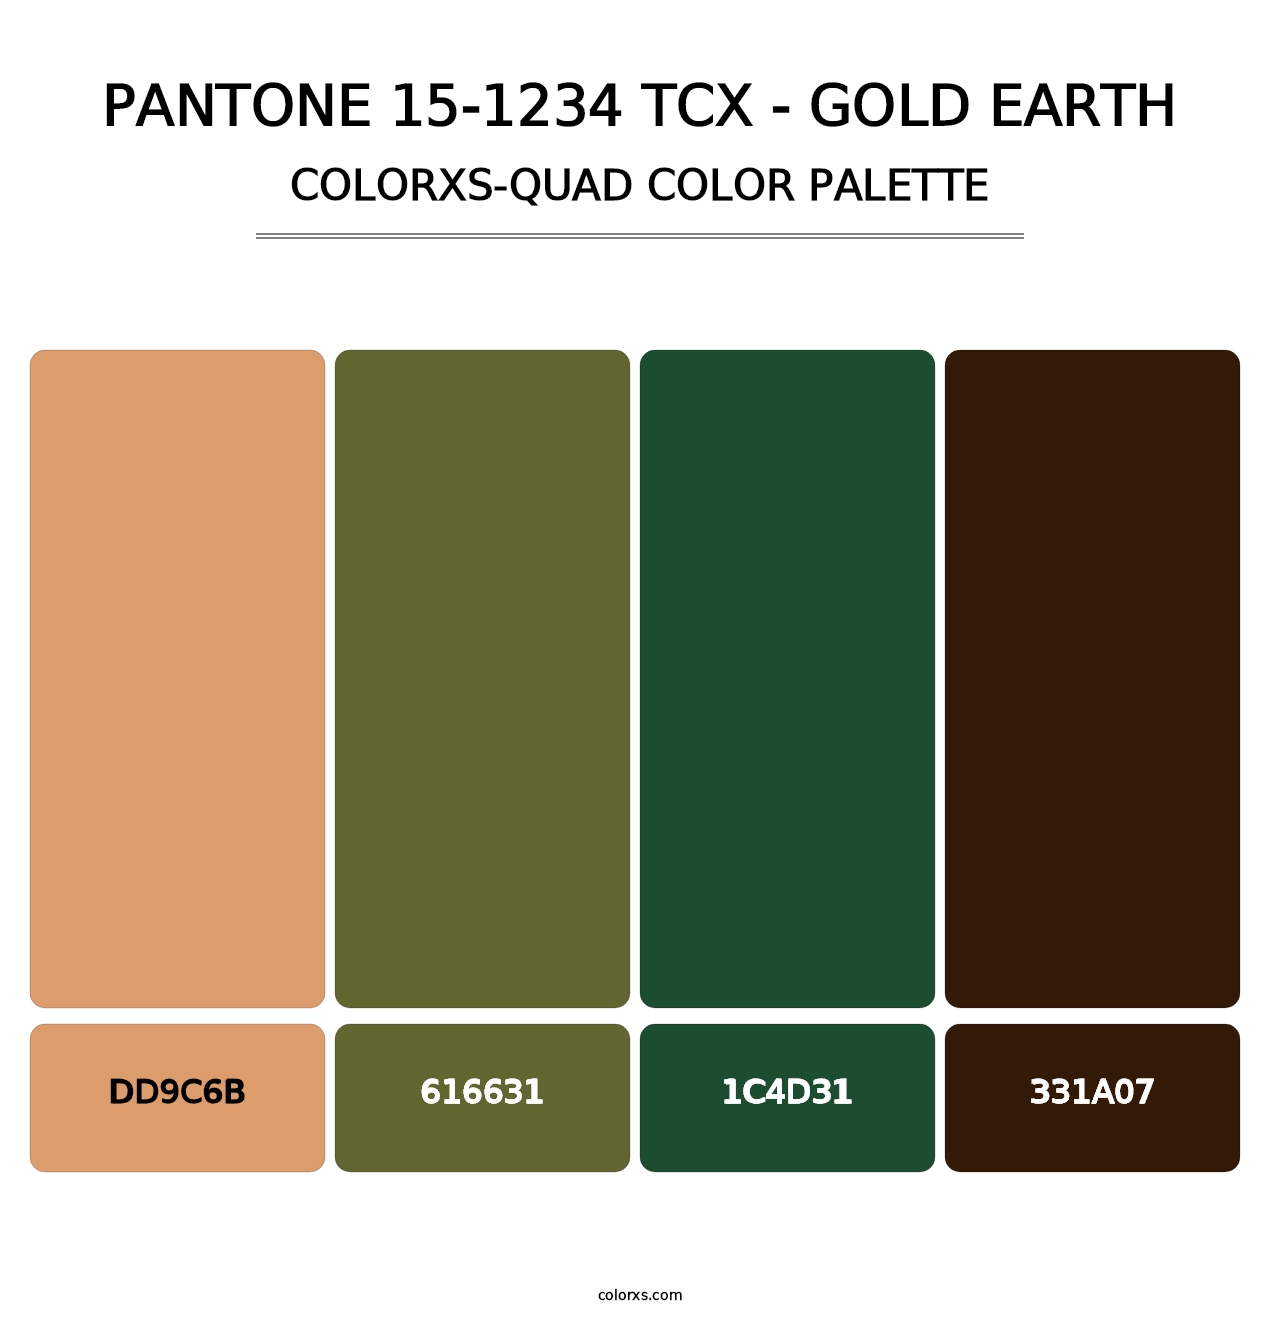 PANTONE 15-1234 TCX - Gold Earth - Colorxs Quad Palette